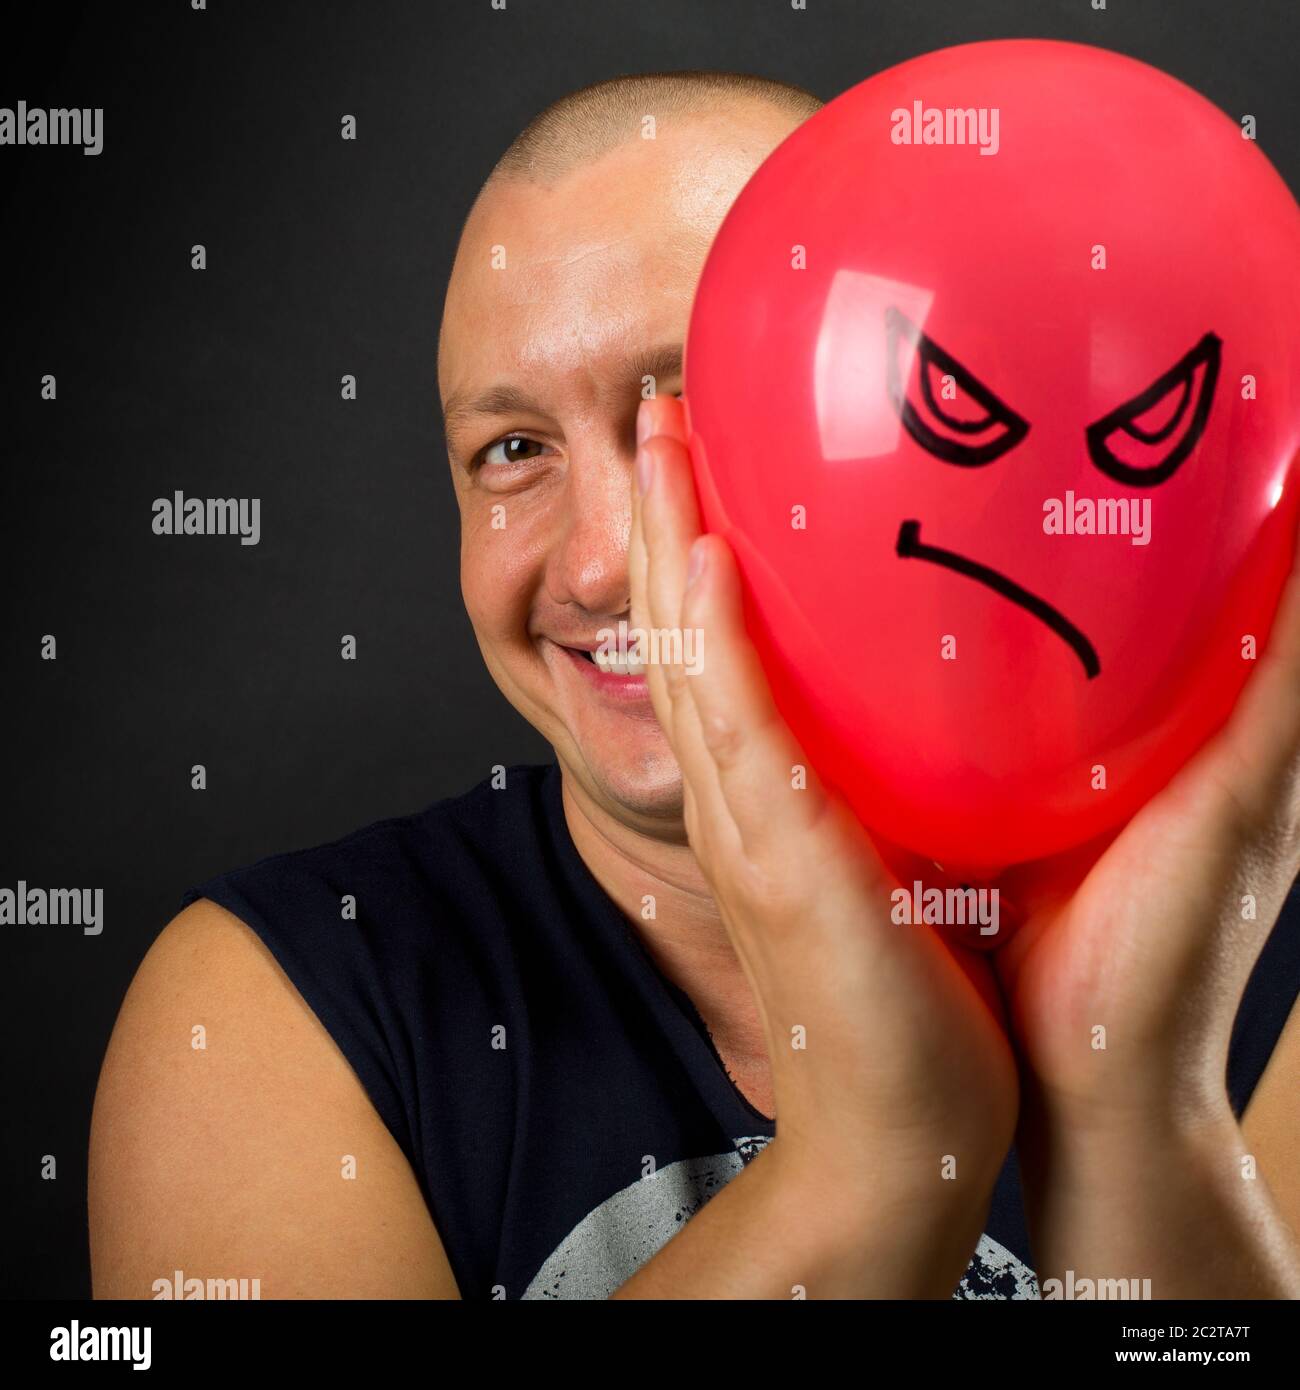 Glücklicher Mensch versteckt sich hinter roten Ballon mit wütend smiley  Stockfotografie - Alamy